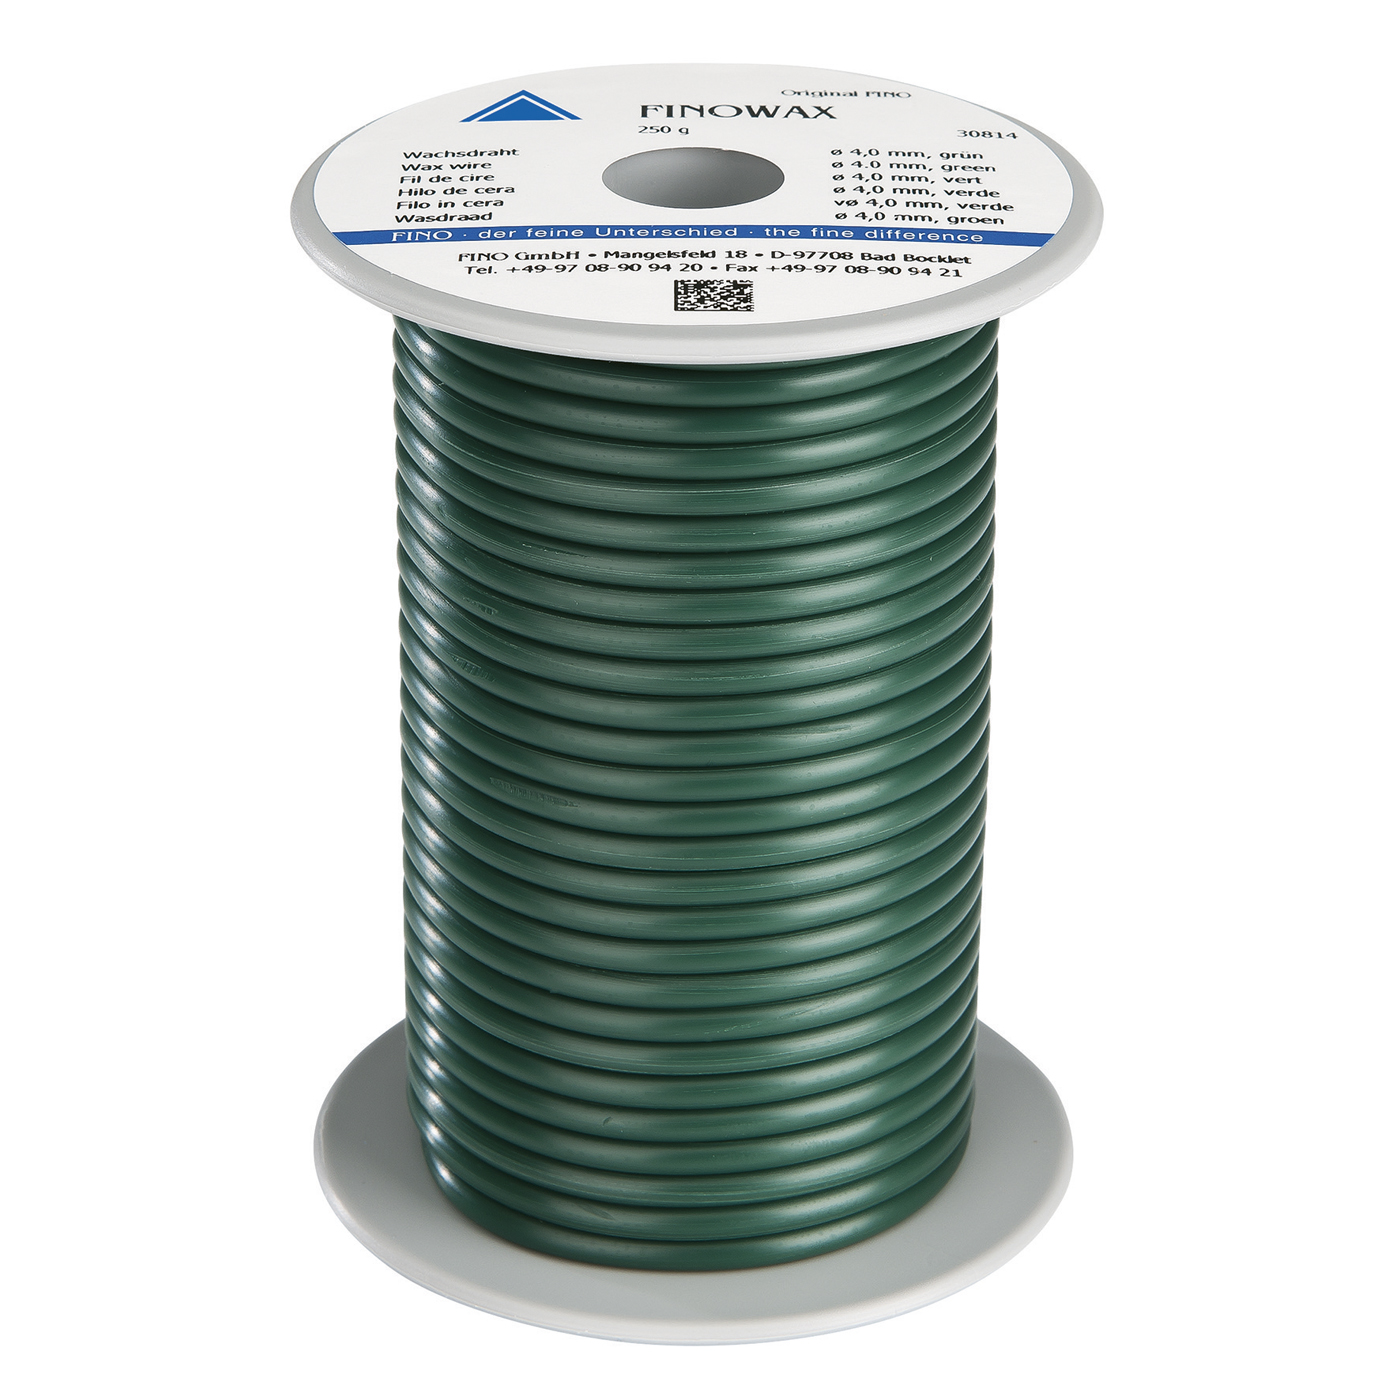 FINOWAX Wax Wire, ø 4.0 mm, Medium Hard, Green - 250 g